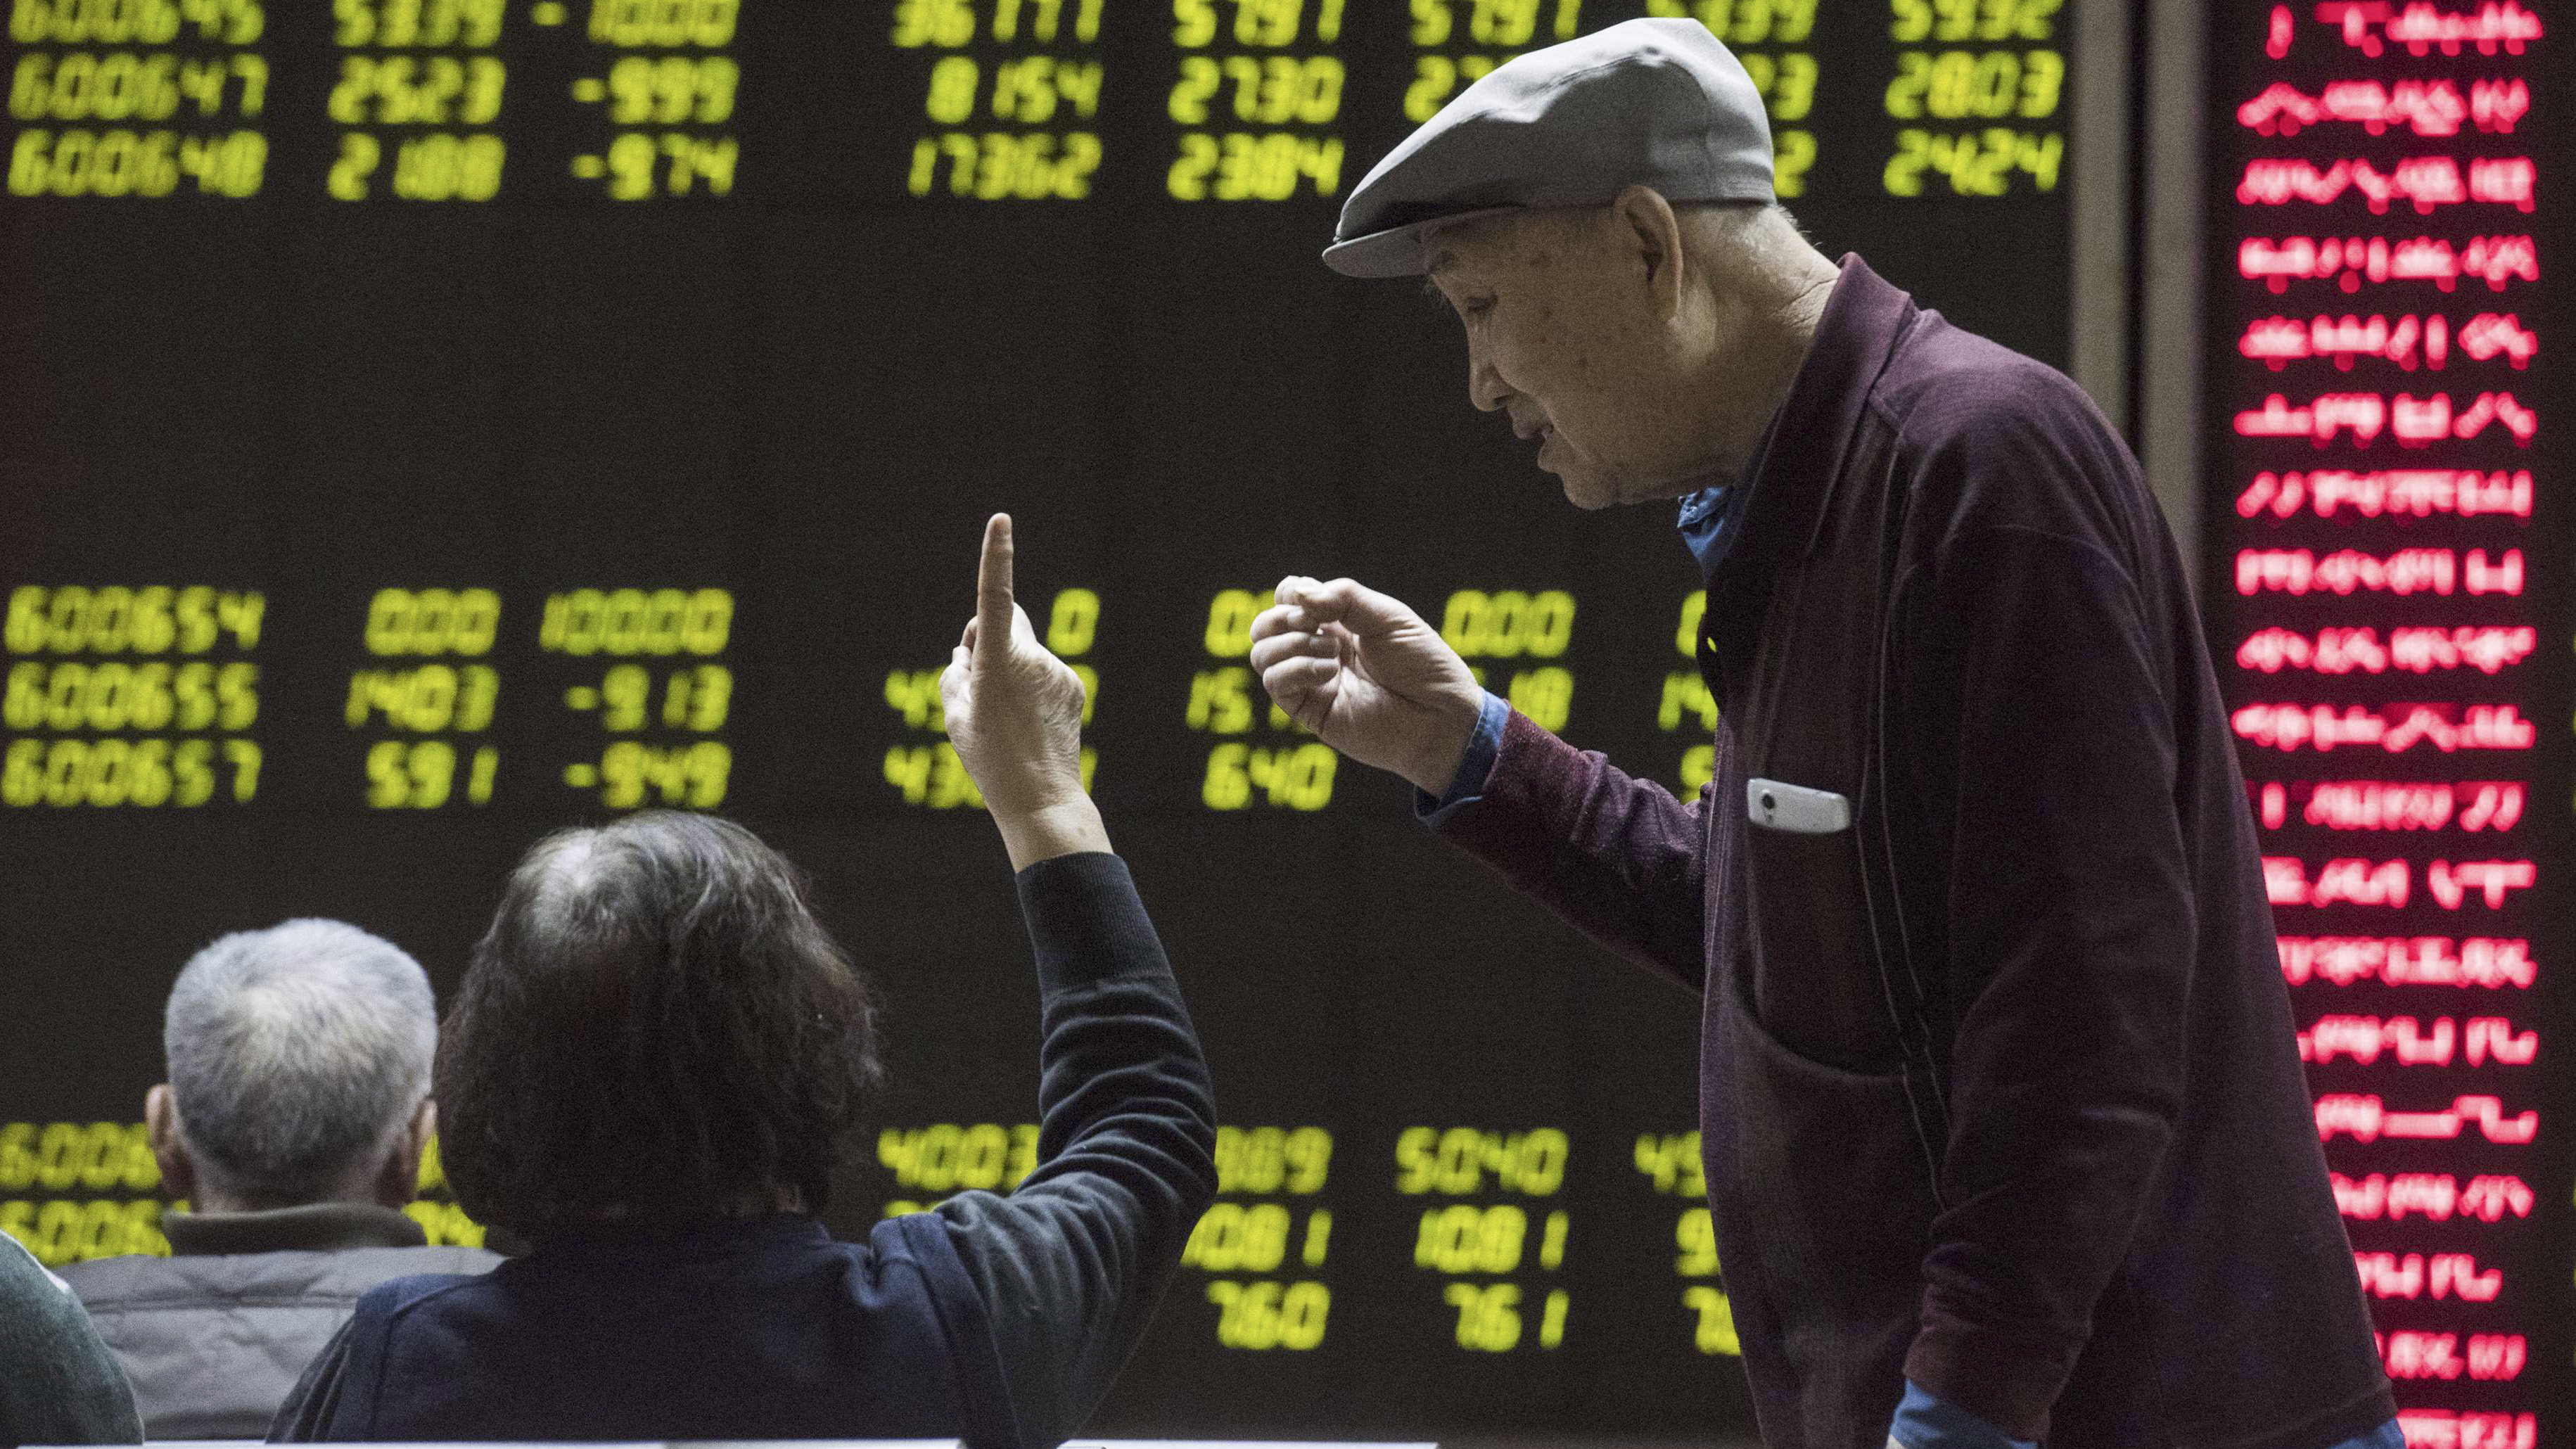 Chinesen verfolgen die Börsenkurse